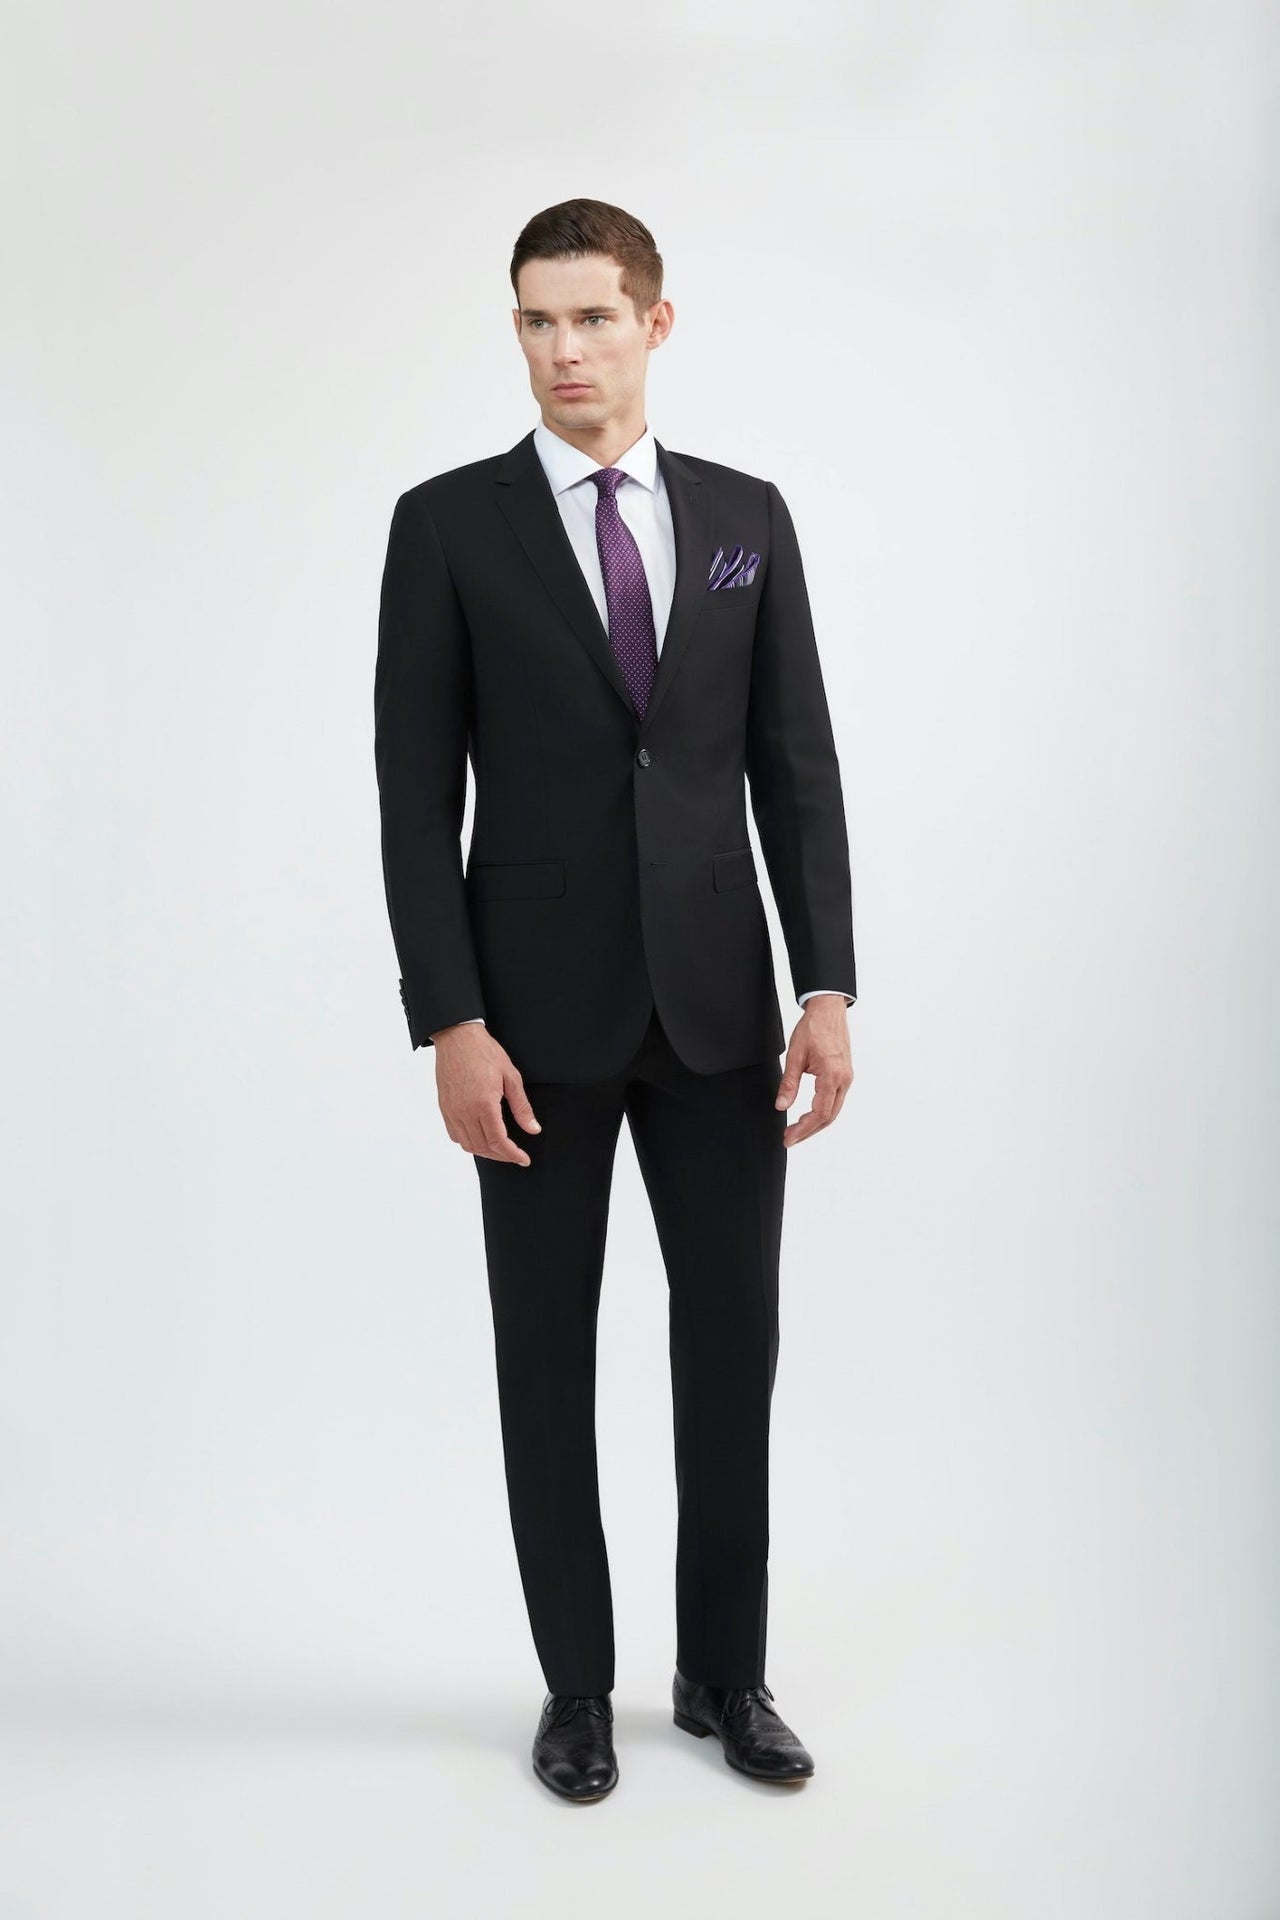 Black Full Suit For Men - Buy Mens Full Suits For All Body Types